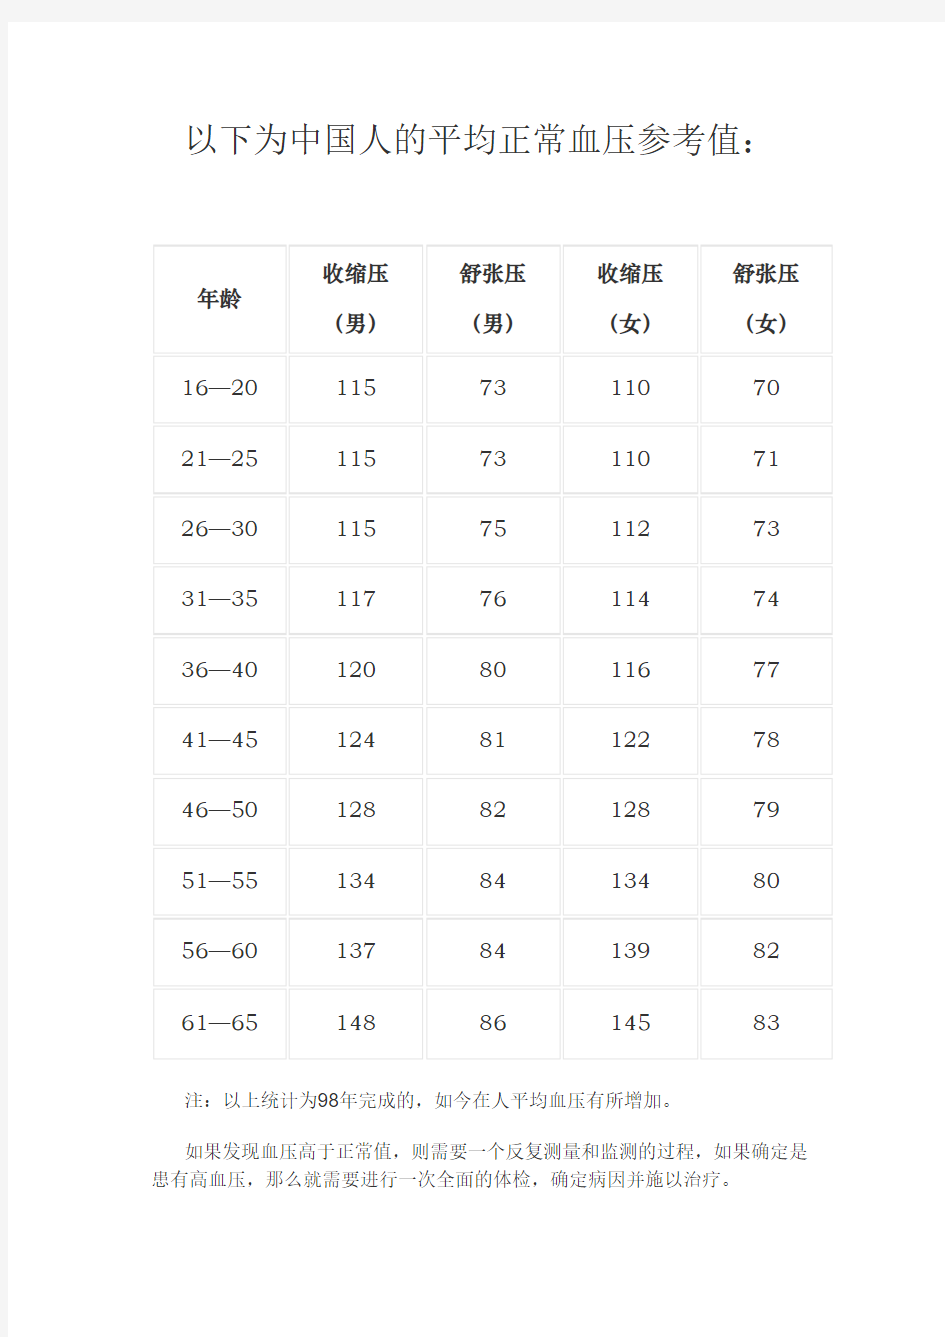 以下为中国人的平均正常血压参考值